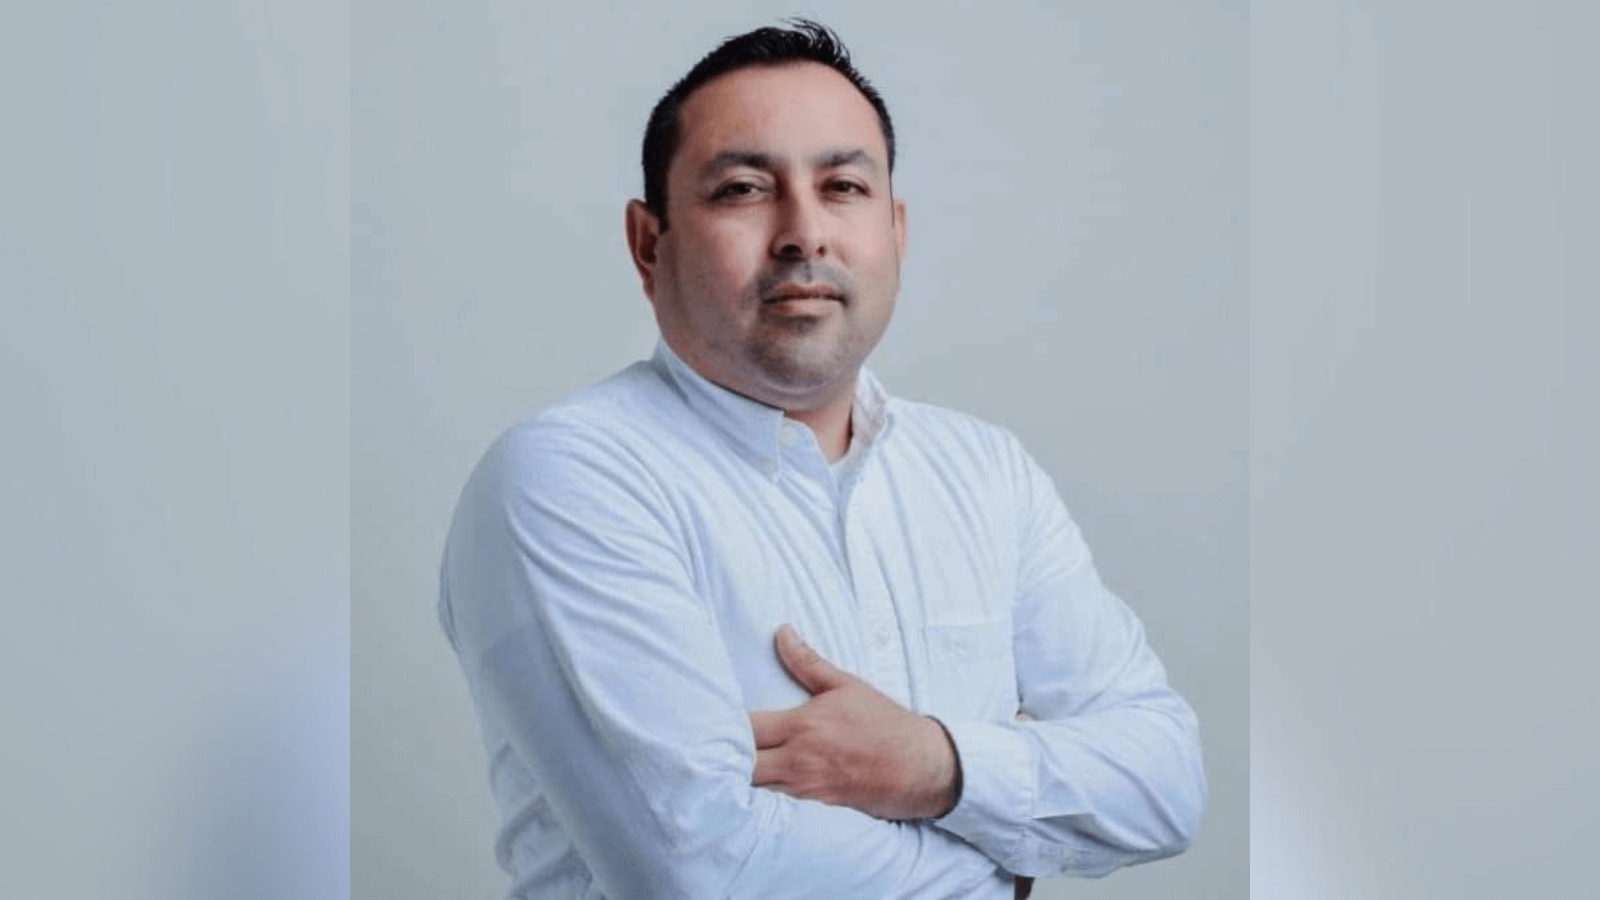 Matan a Noé Ramos, candidato a alcalde en Tamaulipas, mientras hacía
campaña